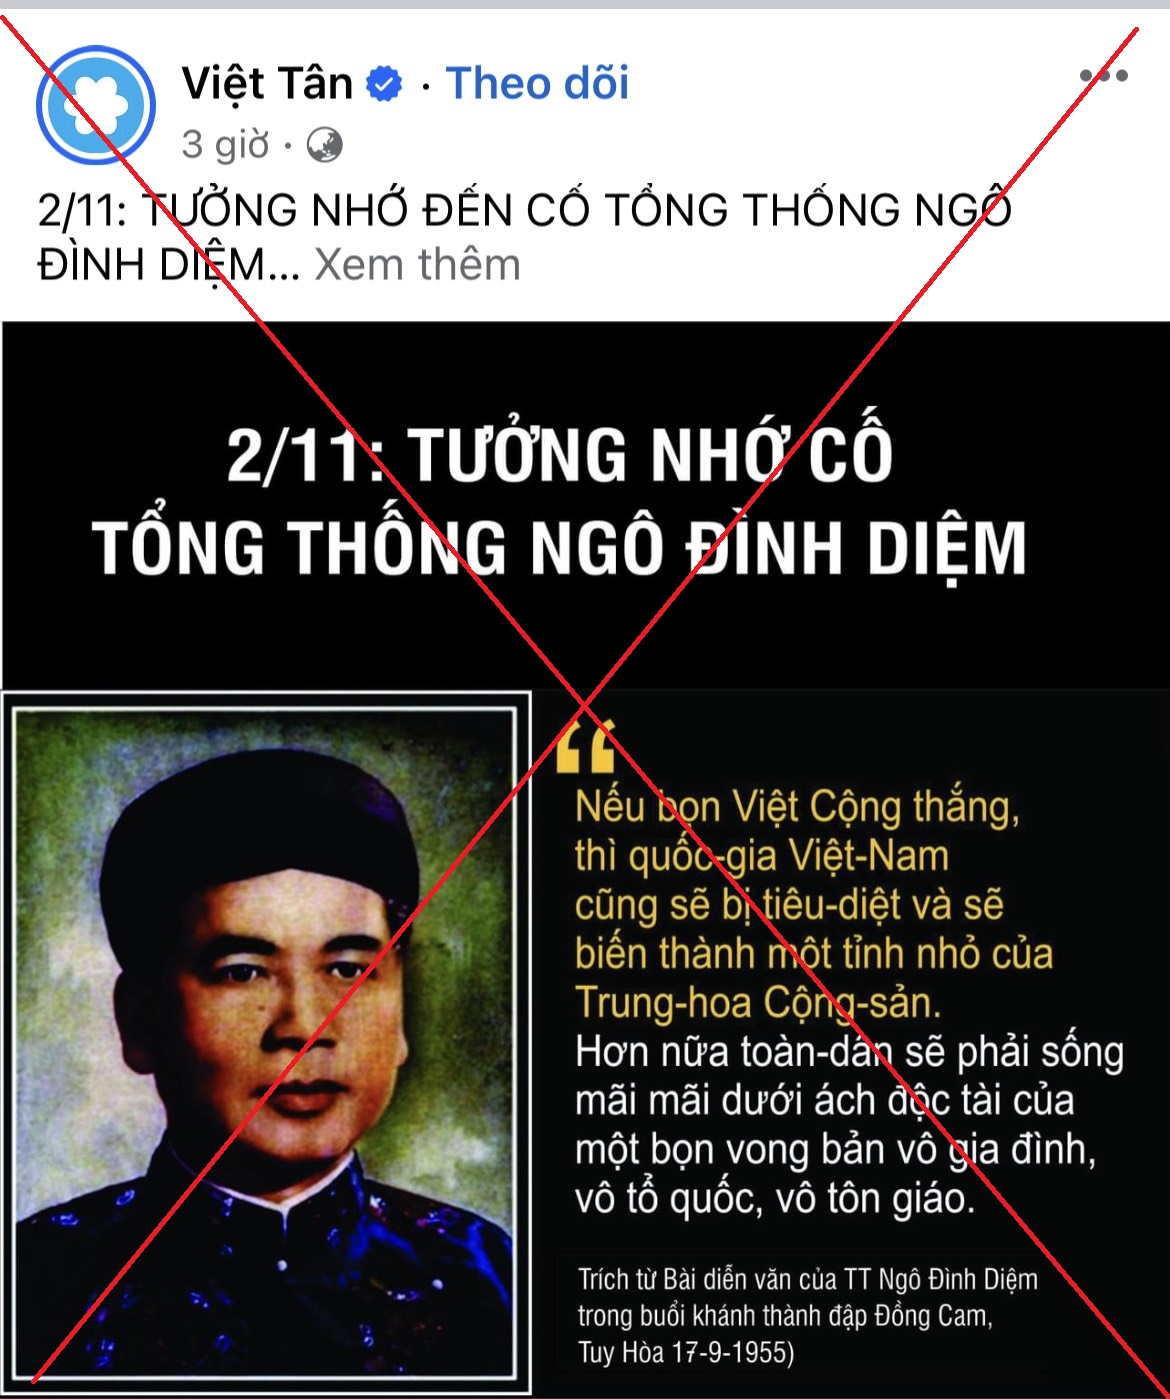 Đến hẹn lại lên đám “Việt Tân” lại khóc thương Ngô Đình Diệm bị chính bàn tay quân nhân ngụy sát hại